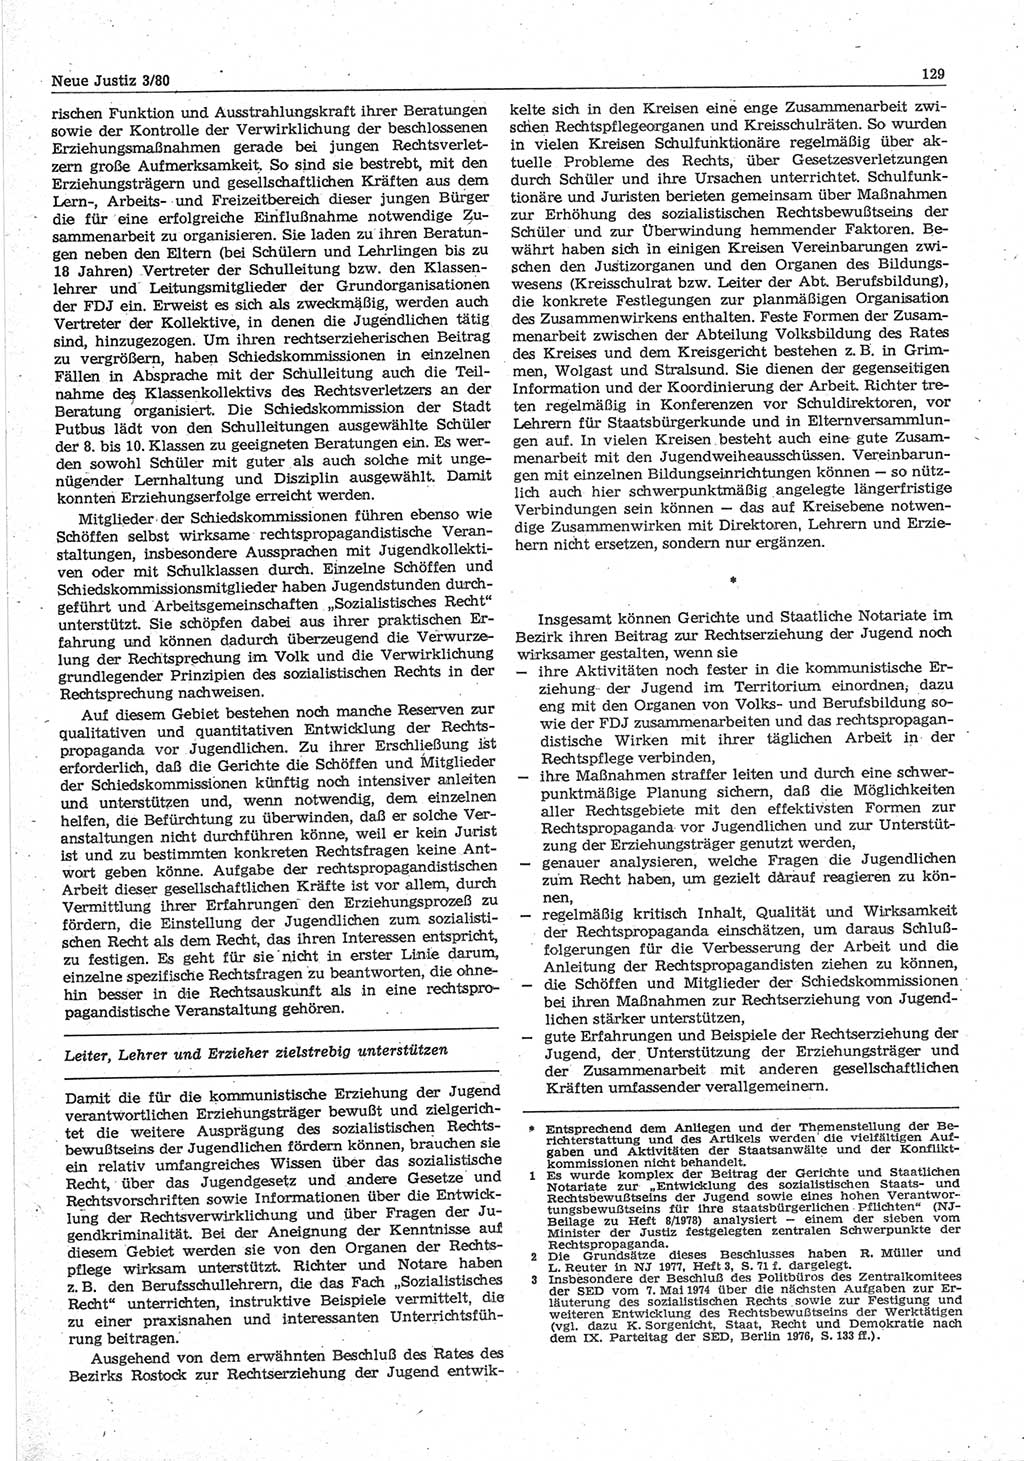 Neue Justiz (NJ), Zeitschrift für sozialistisches Recht und Gesetzlichkeit [Deutsche Demokratische Republik (DDR)], 34. Jahrgang 1980, Seite 129 (NJ DDR 1980, S. 129)